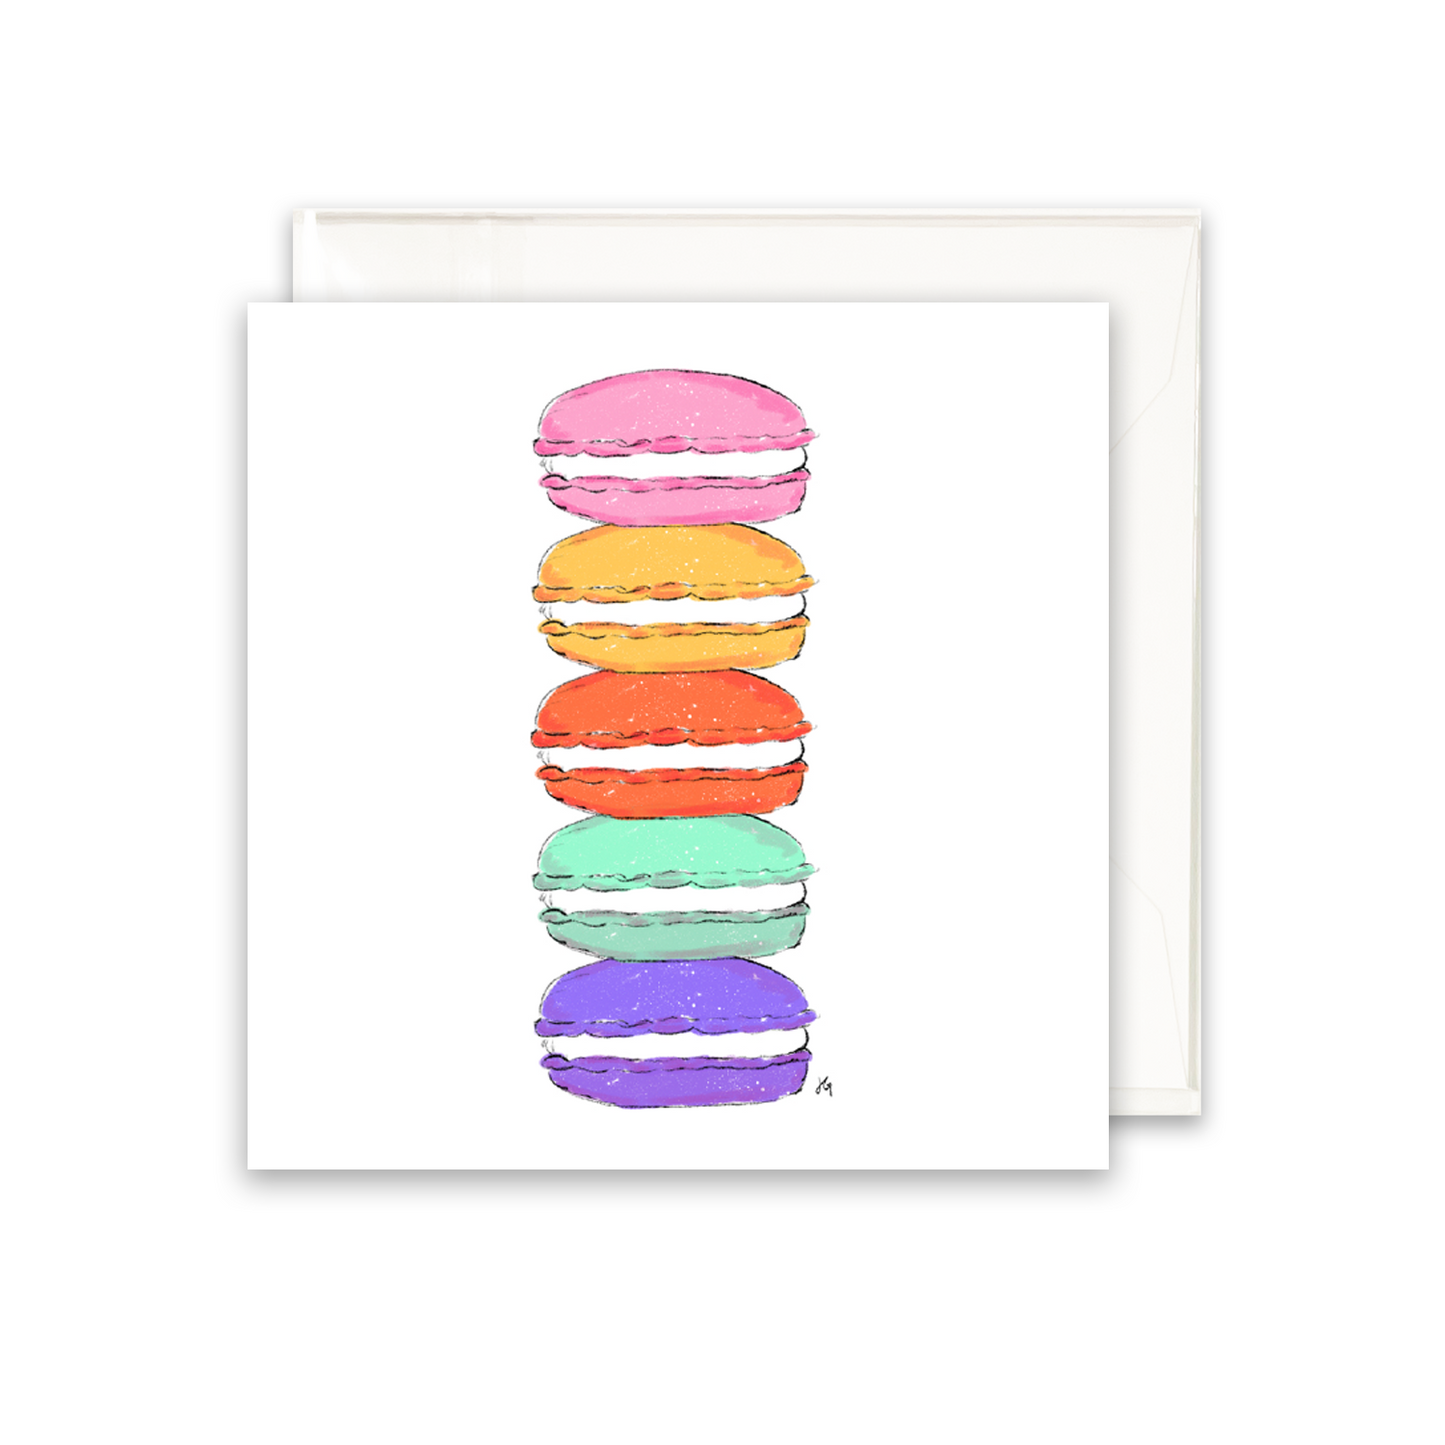 Macaron Enclosure Card Sets - Multiple colors